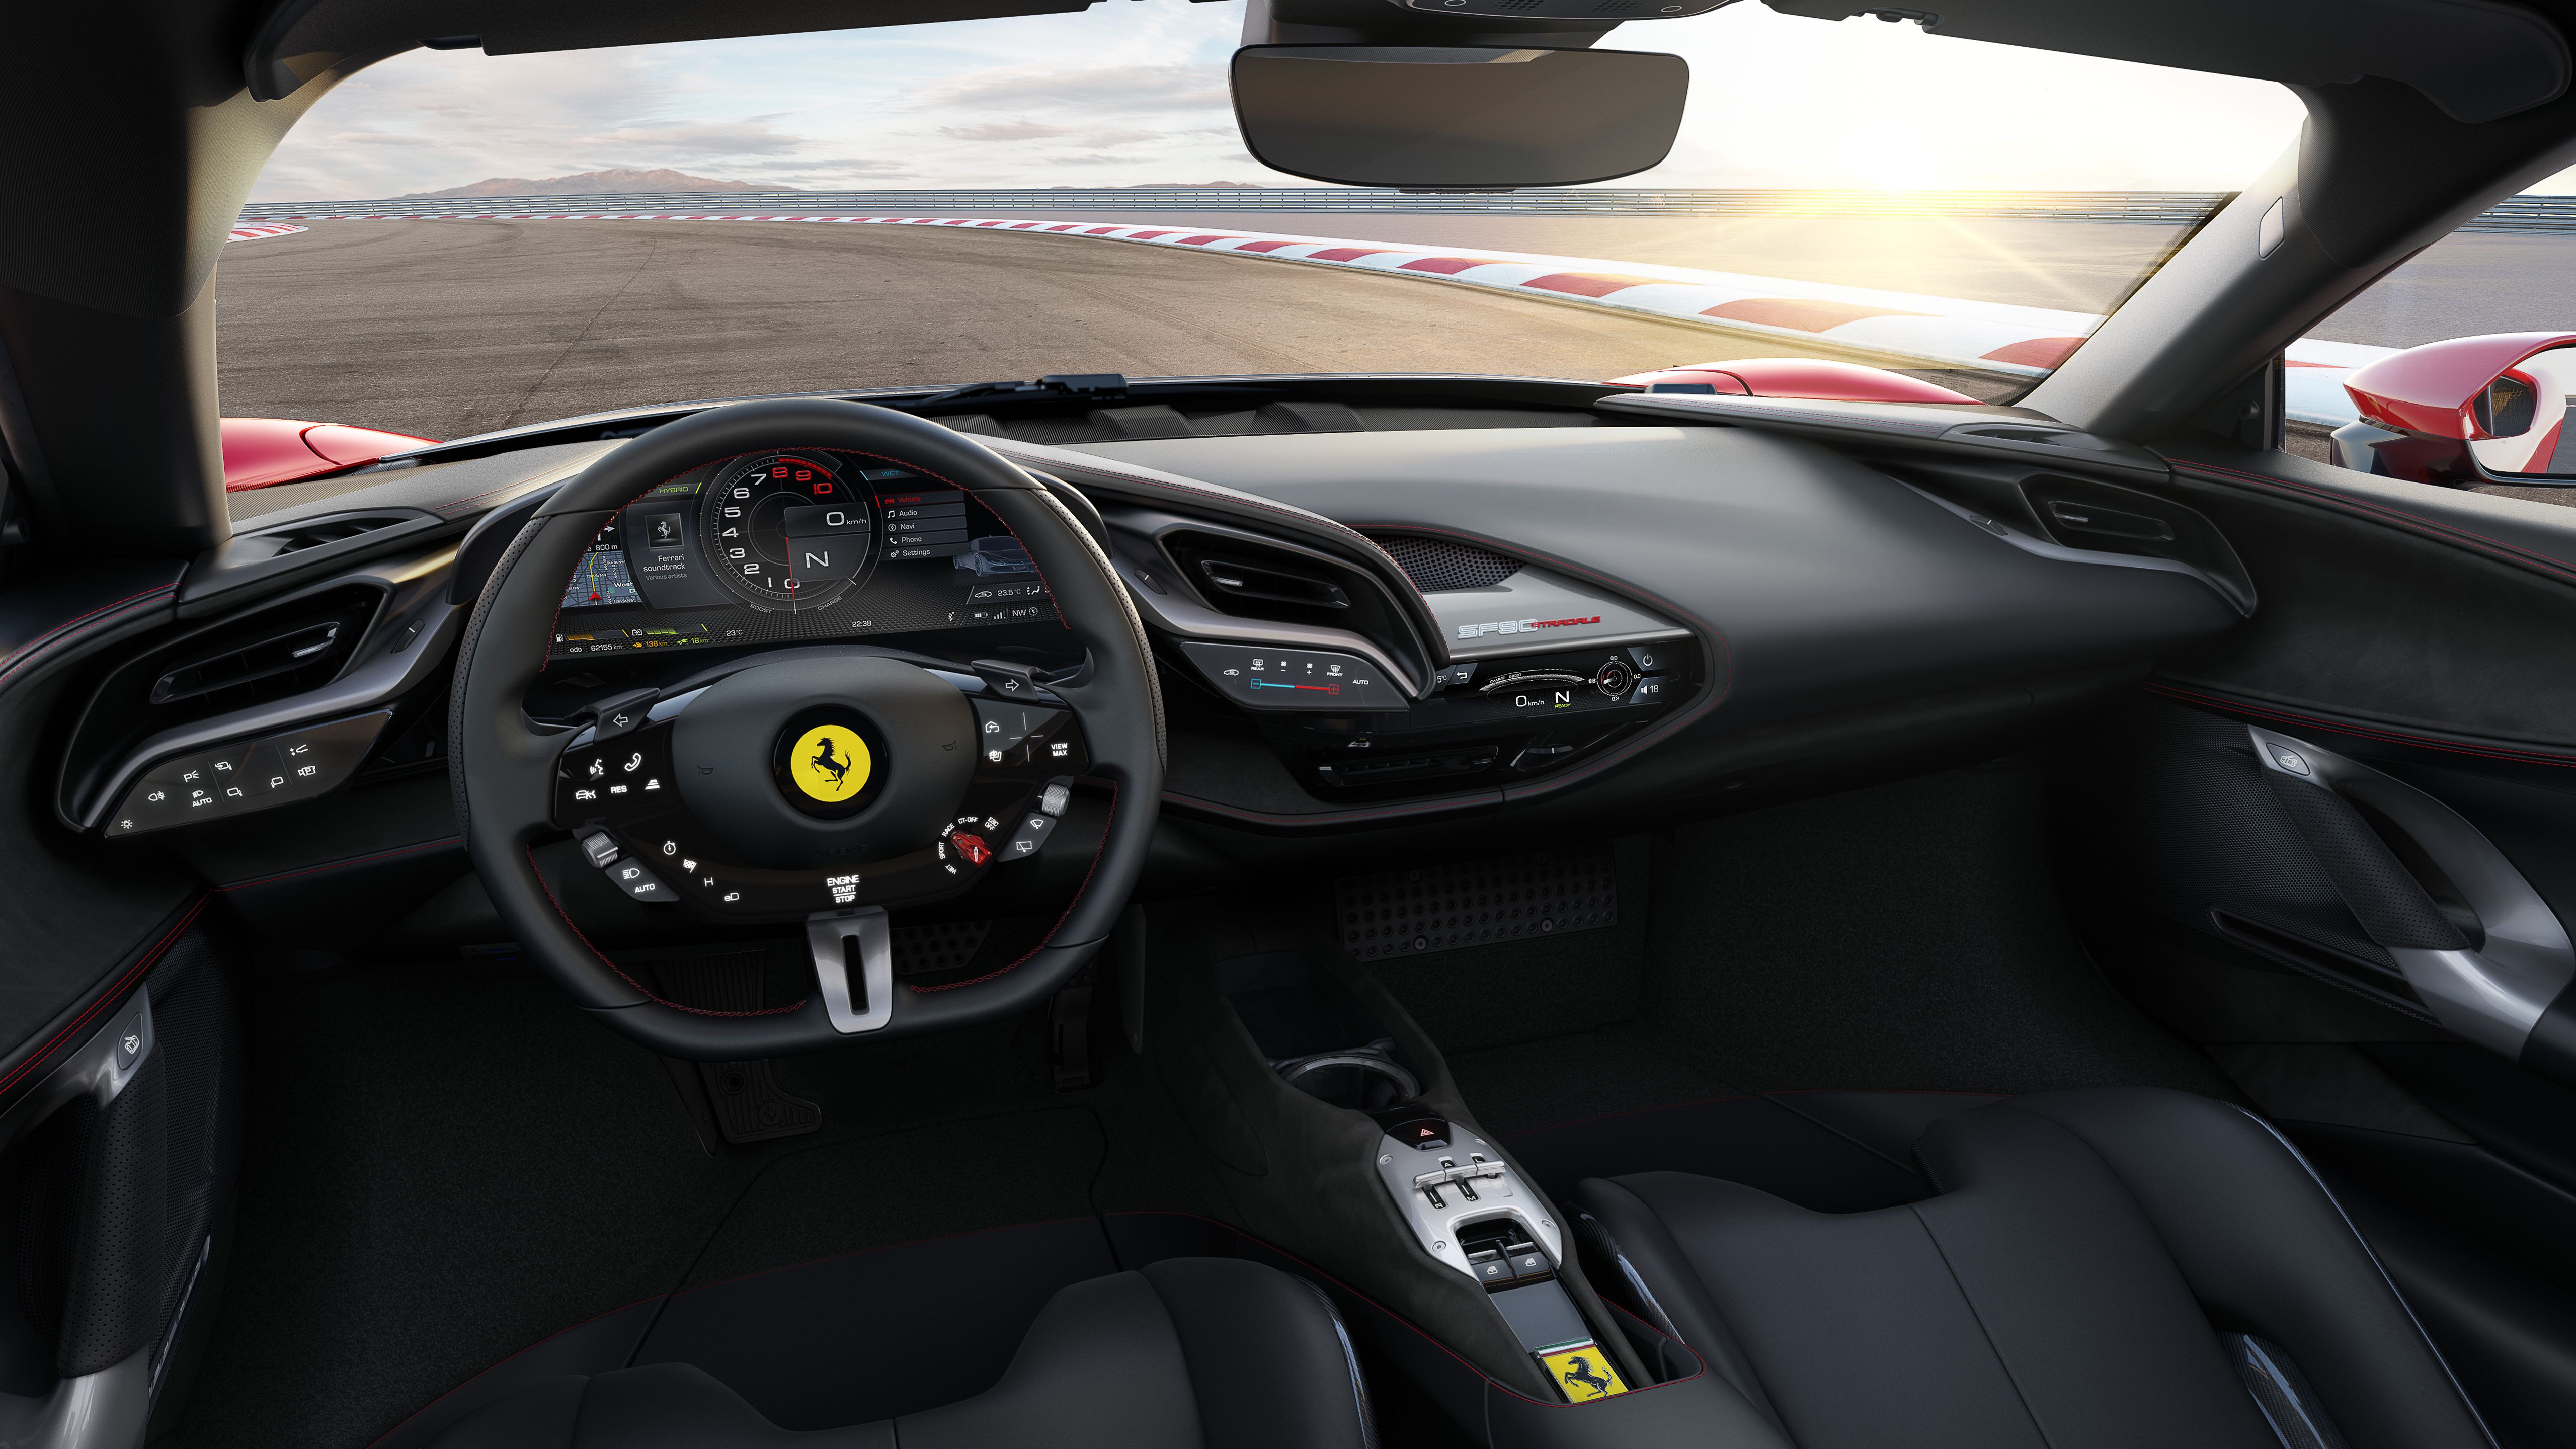 Ferrari SF90 Stradale 2019 4K Interior Wallpaper. HD Car Wallpaper